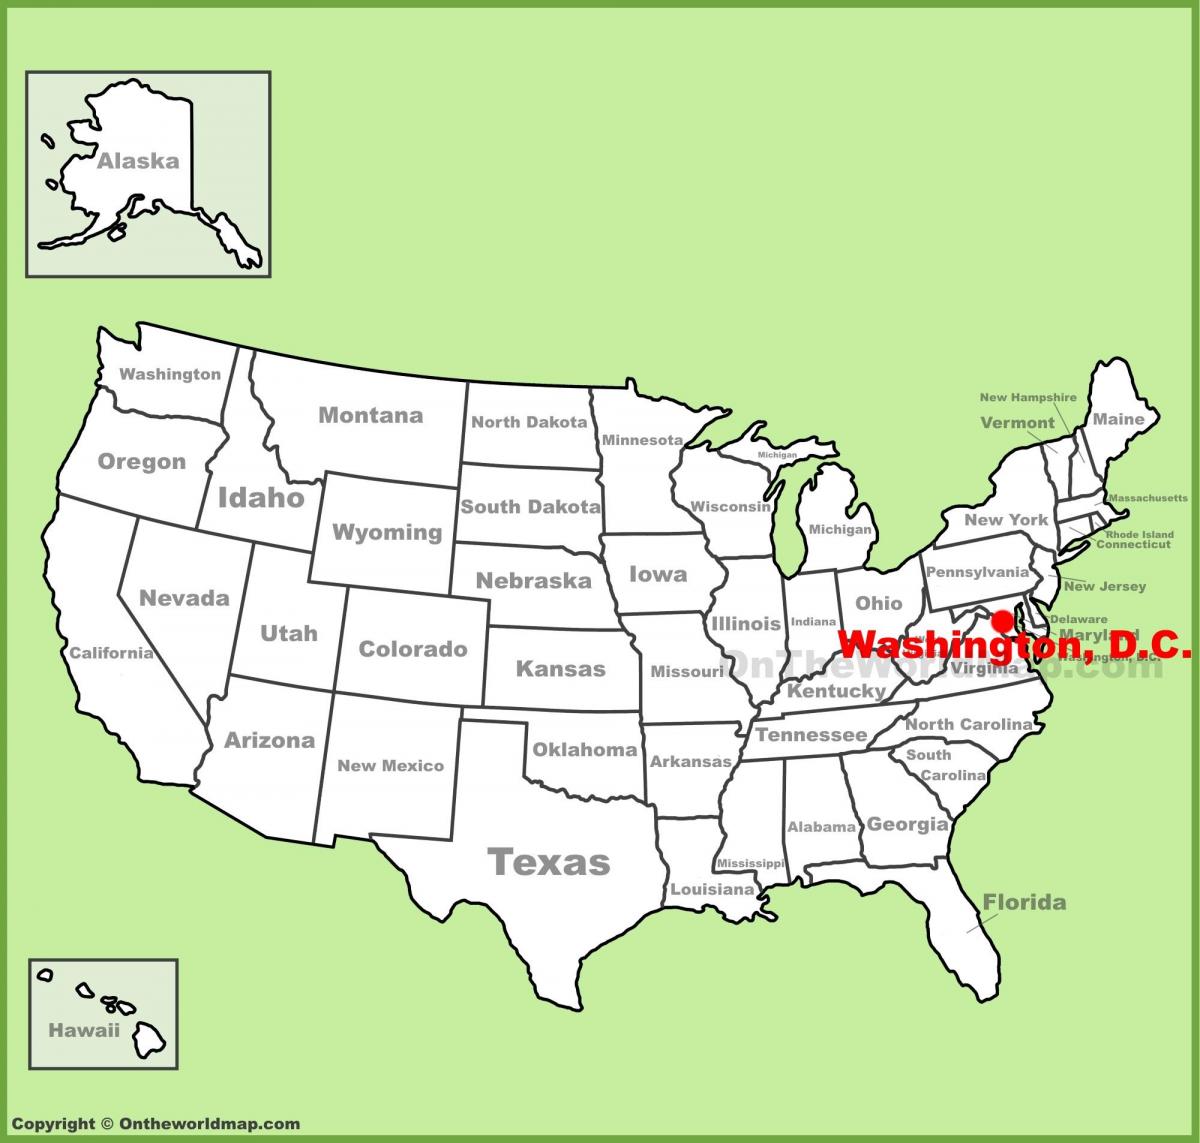 washington dc på kart over amerika